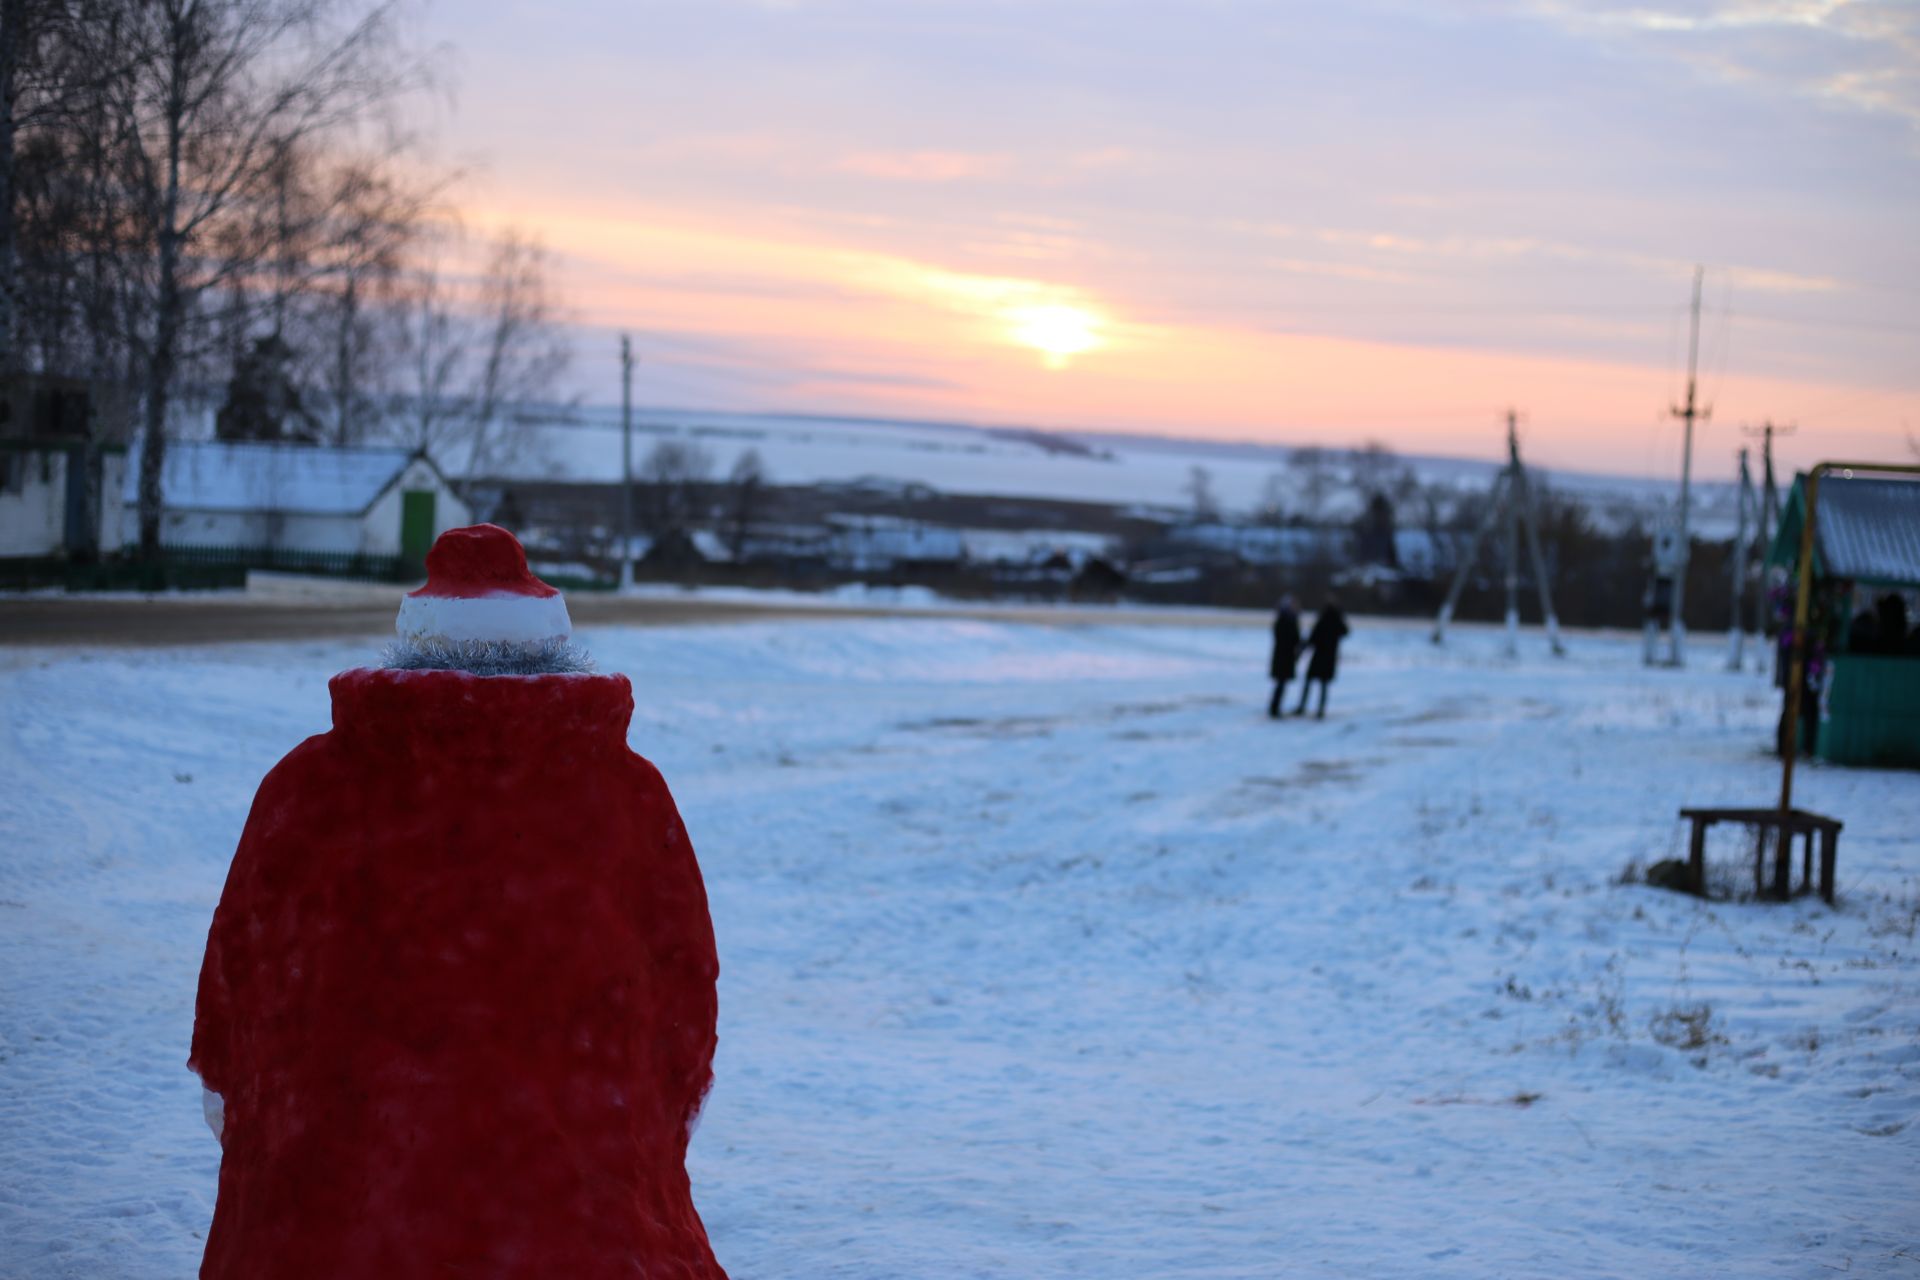 Фоторепортаж: яркий новогодний праздник в Ялкино